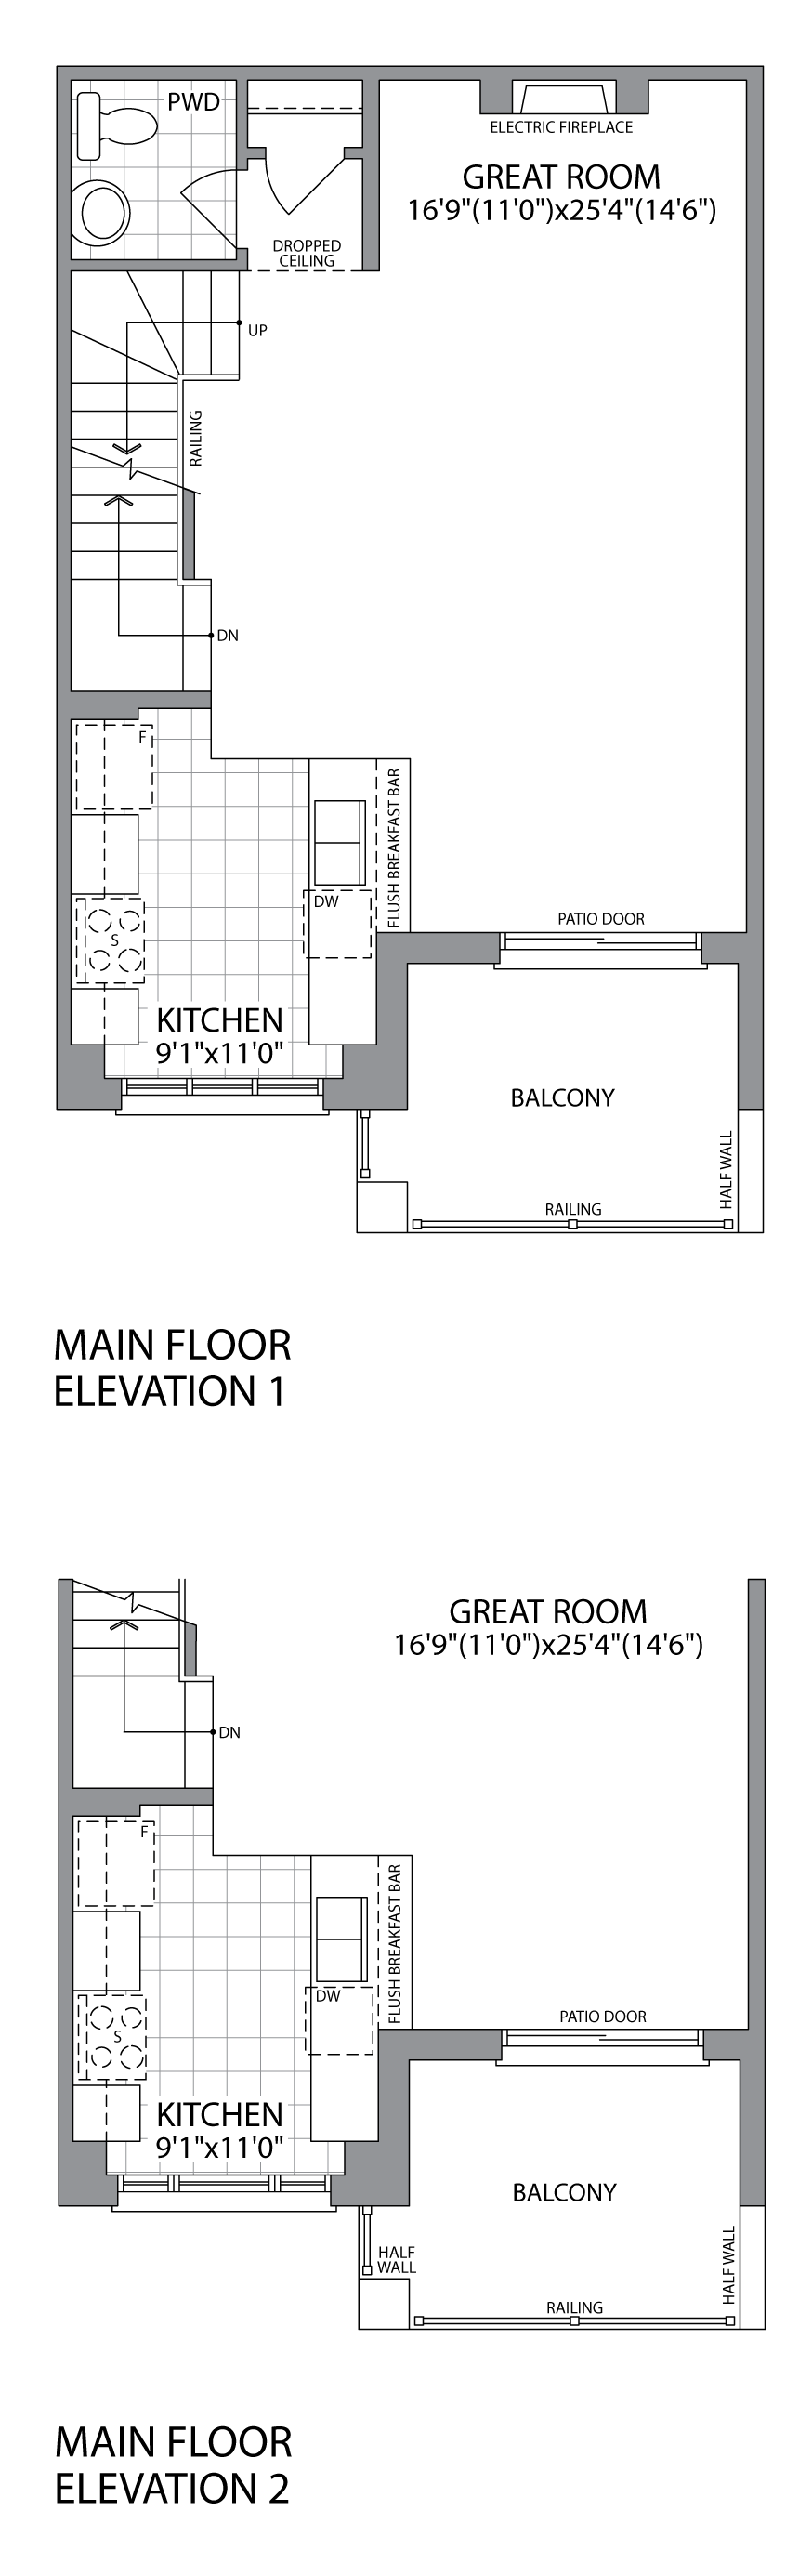 The Hammond (BB1) Main Floor